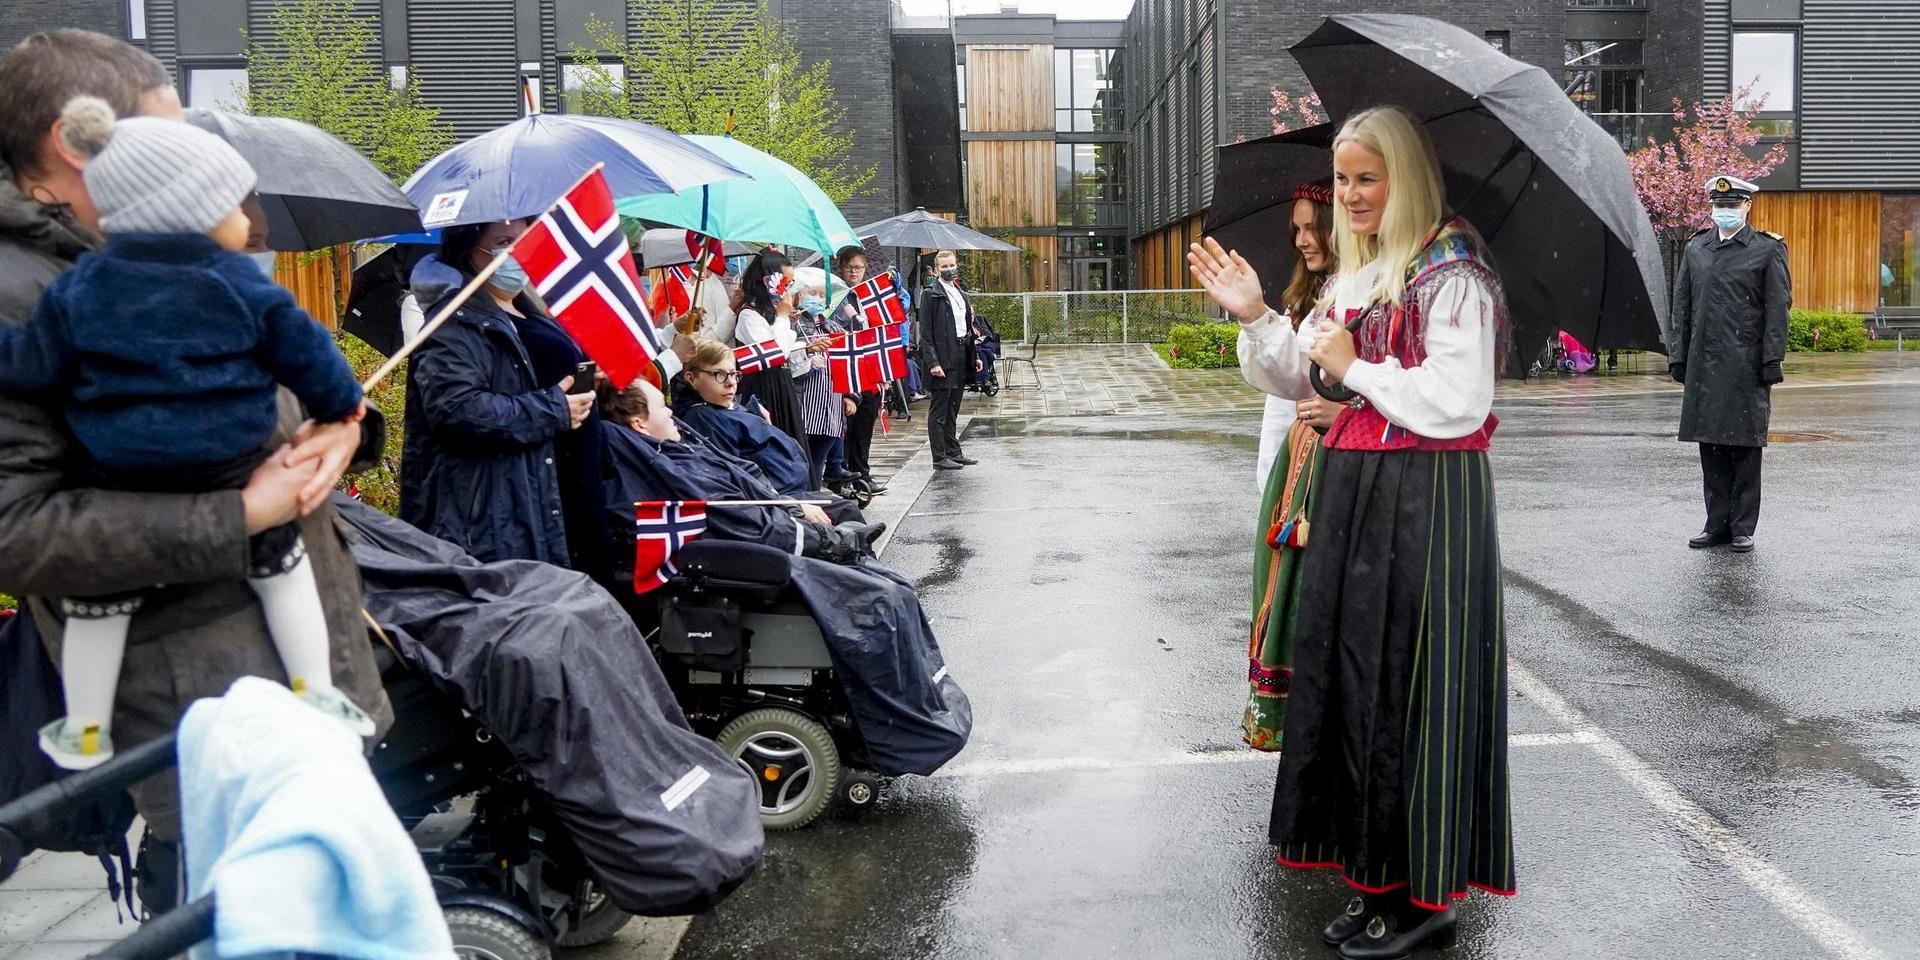 Prinsessan Ingrid Alexandra och kronprinsessan Mette-Marit besöker Gullhella äldreomsorg i kommunen Asker på 17 maj.